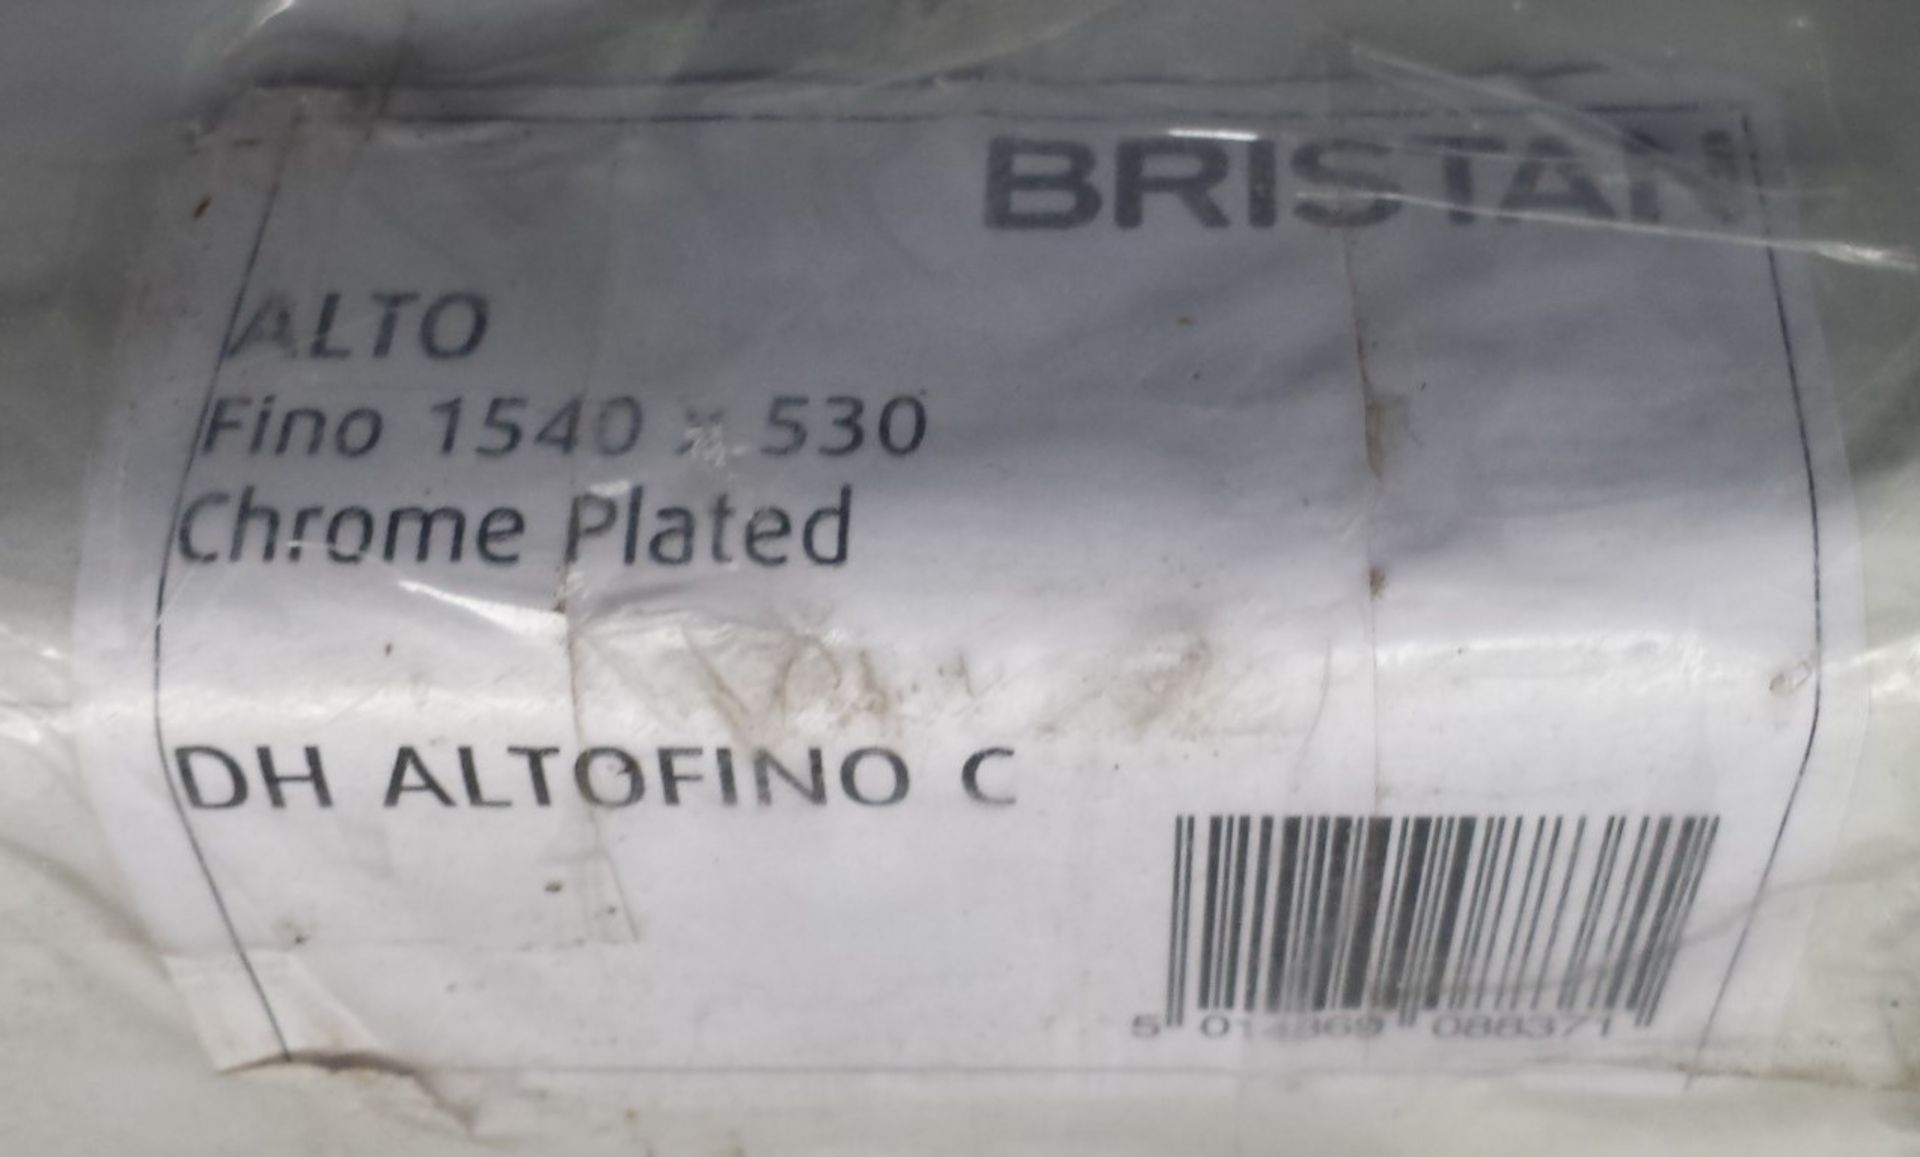 1 x Designer Briston Alto Fino Chrome Plated Vertical Decorative Radiator - 1500 x 500mm - Brand New - Image 2 of 2